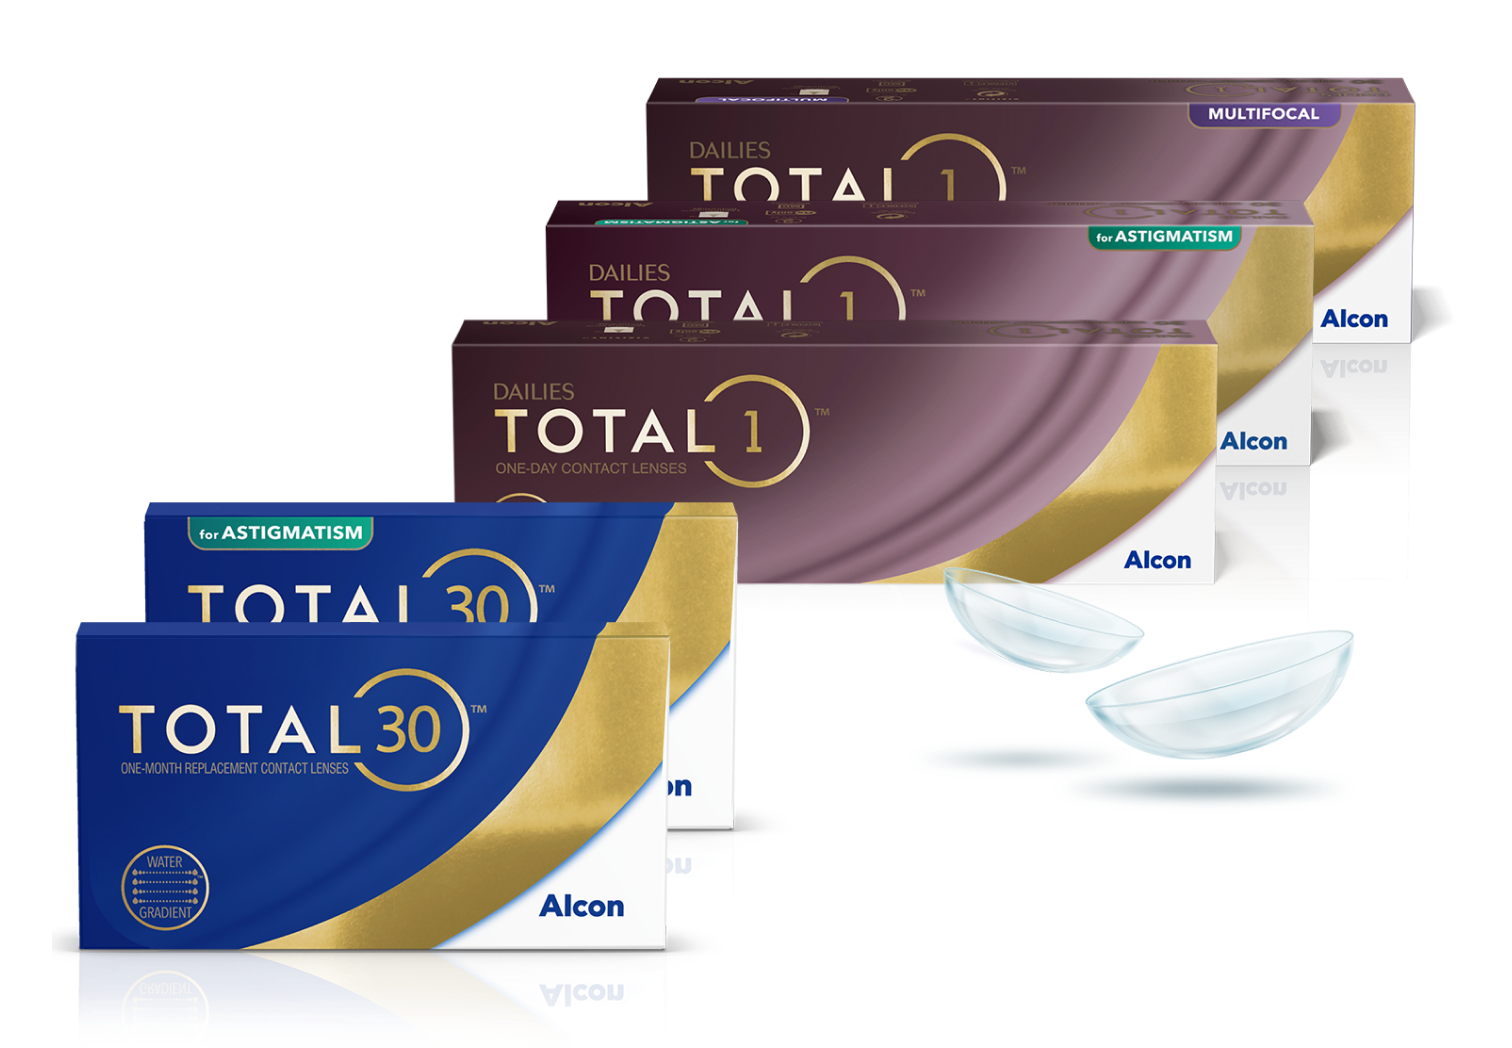 Produktové krabičky z rodiny kontaktných šošoviek Total zahrňujúce denné šošovky Dailies Total1, Dailies Total1 Multifocal, Dailies Total1 for Astigmatism a mesačné kontaktné šošovky Total30 a Total30 for Astigmatism.